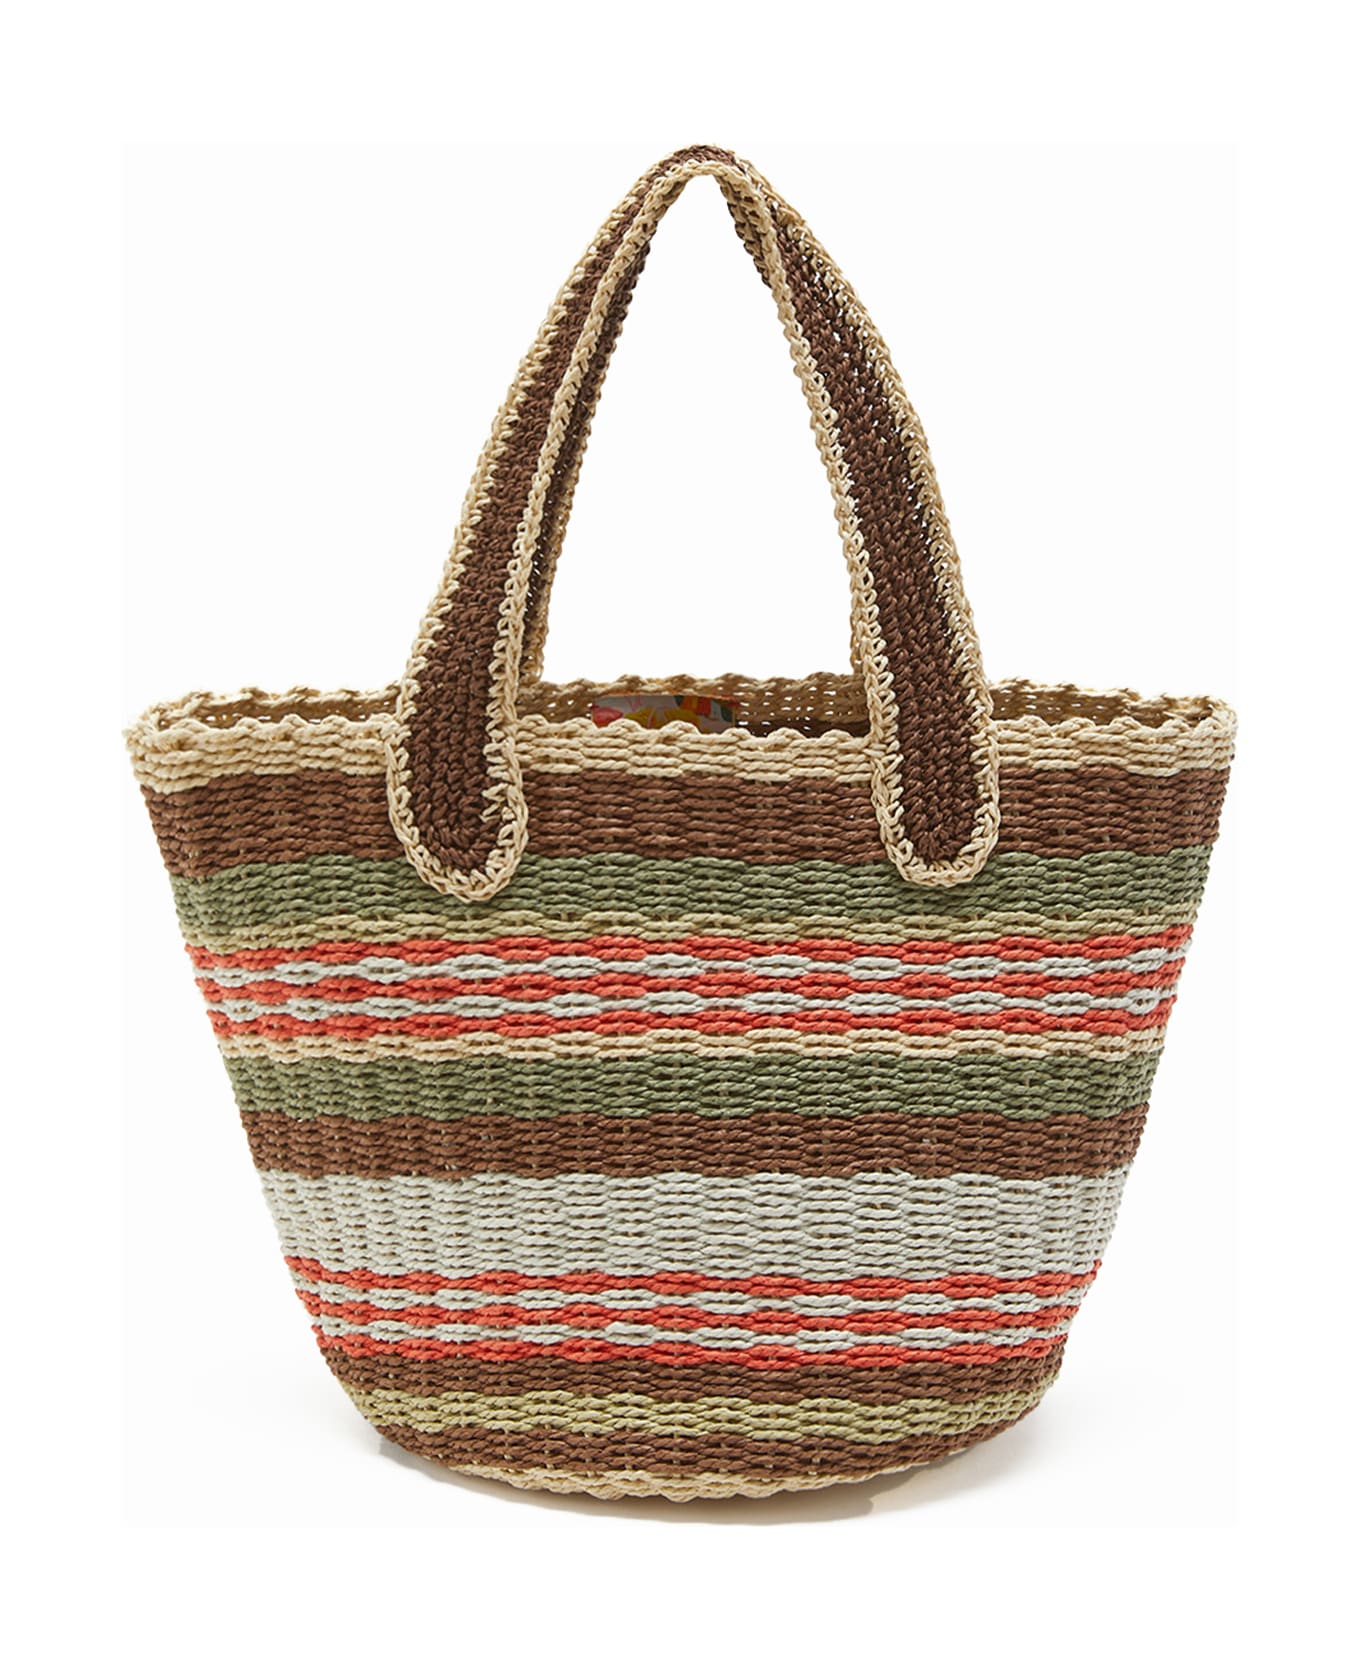 Malìparmi Shopping Bag In Hand-woven Multicolored Raffia - MARRONE/BEIGE/ARANCIO